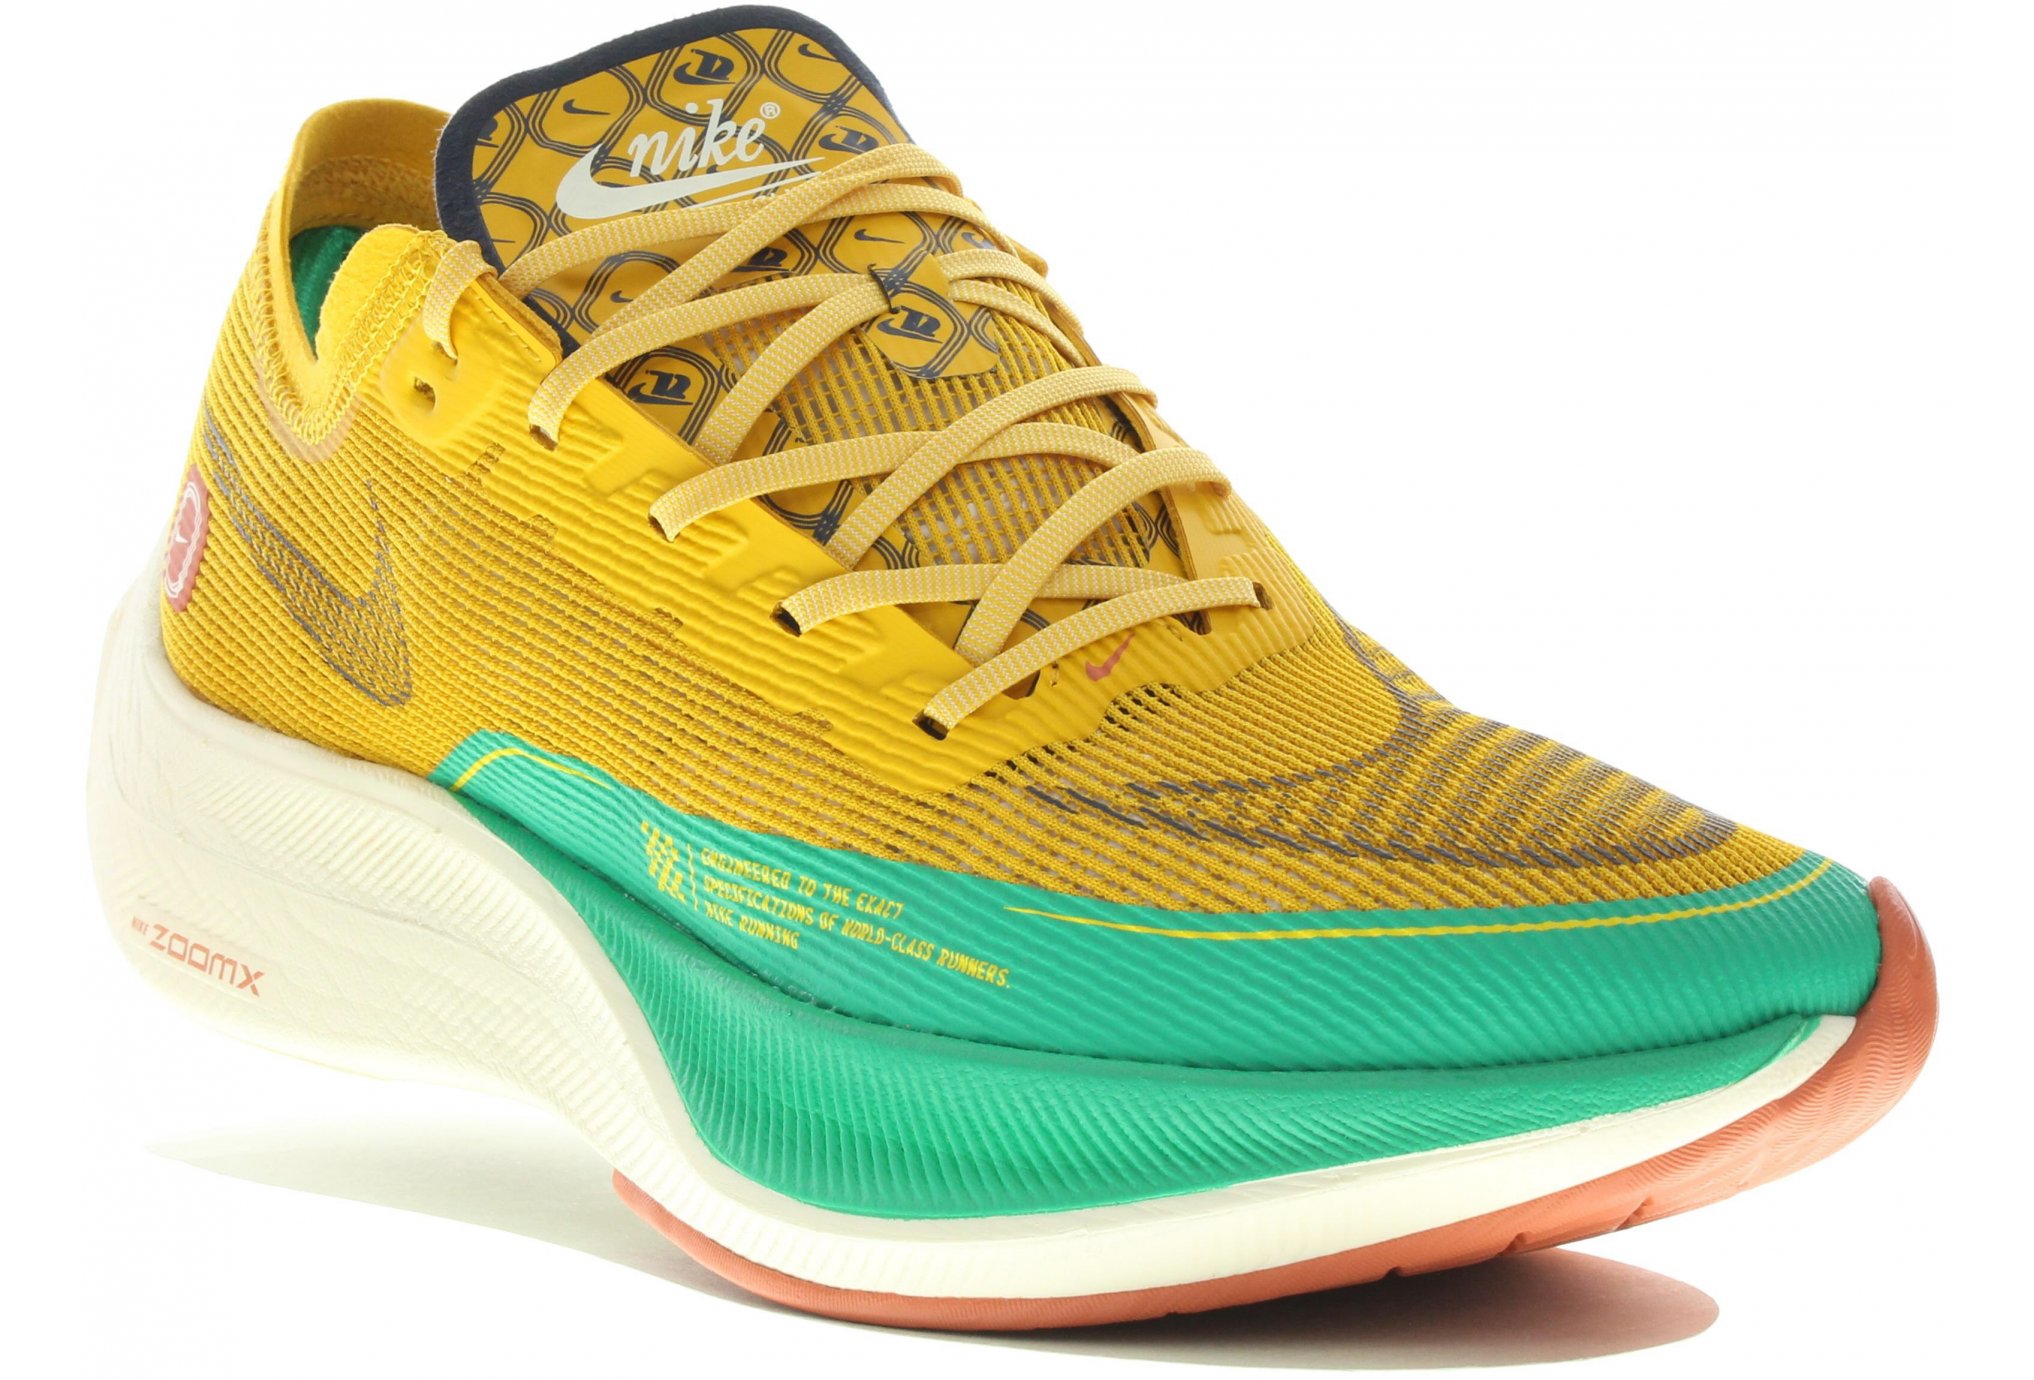 RÉVOLUTION TECNHOLOGIQUE : Nike met de la plaque carbone dans ses chaussures  à pointes pour l'athlétisme - u-Trail